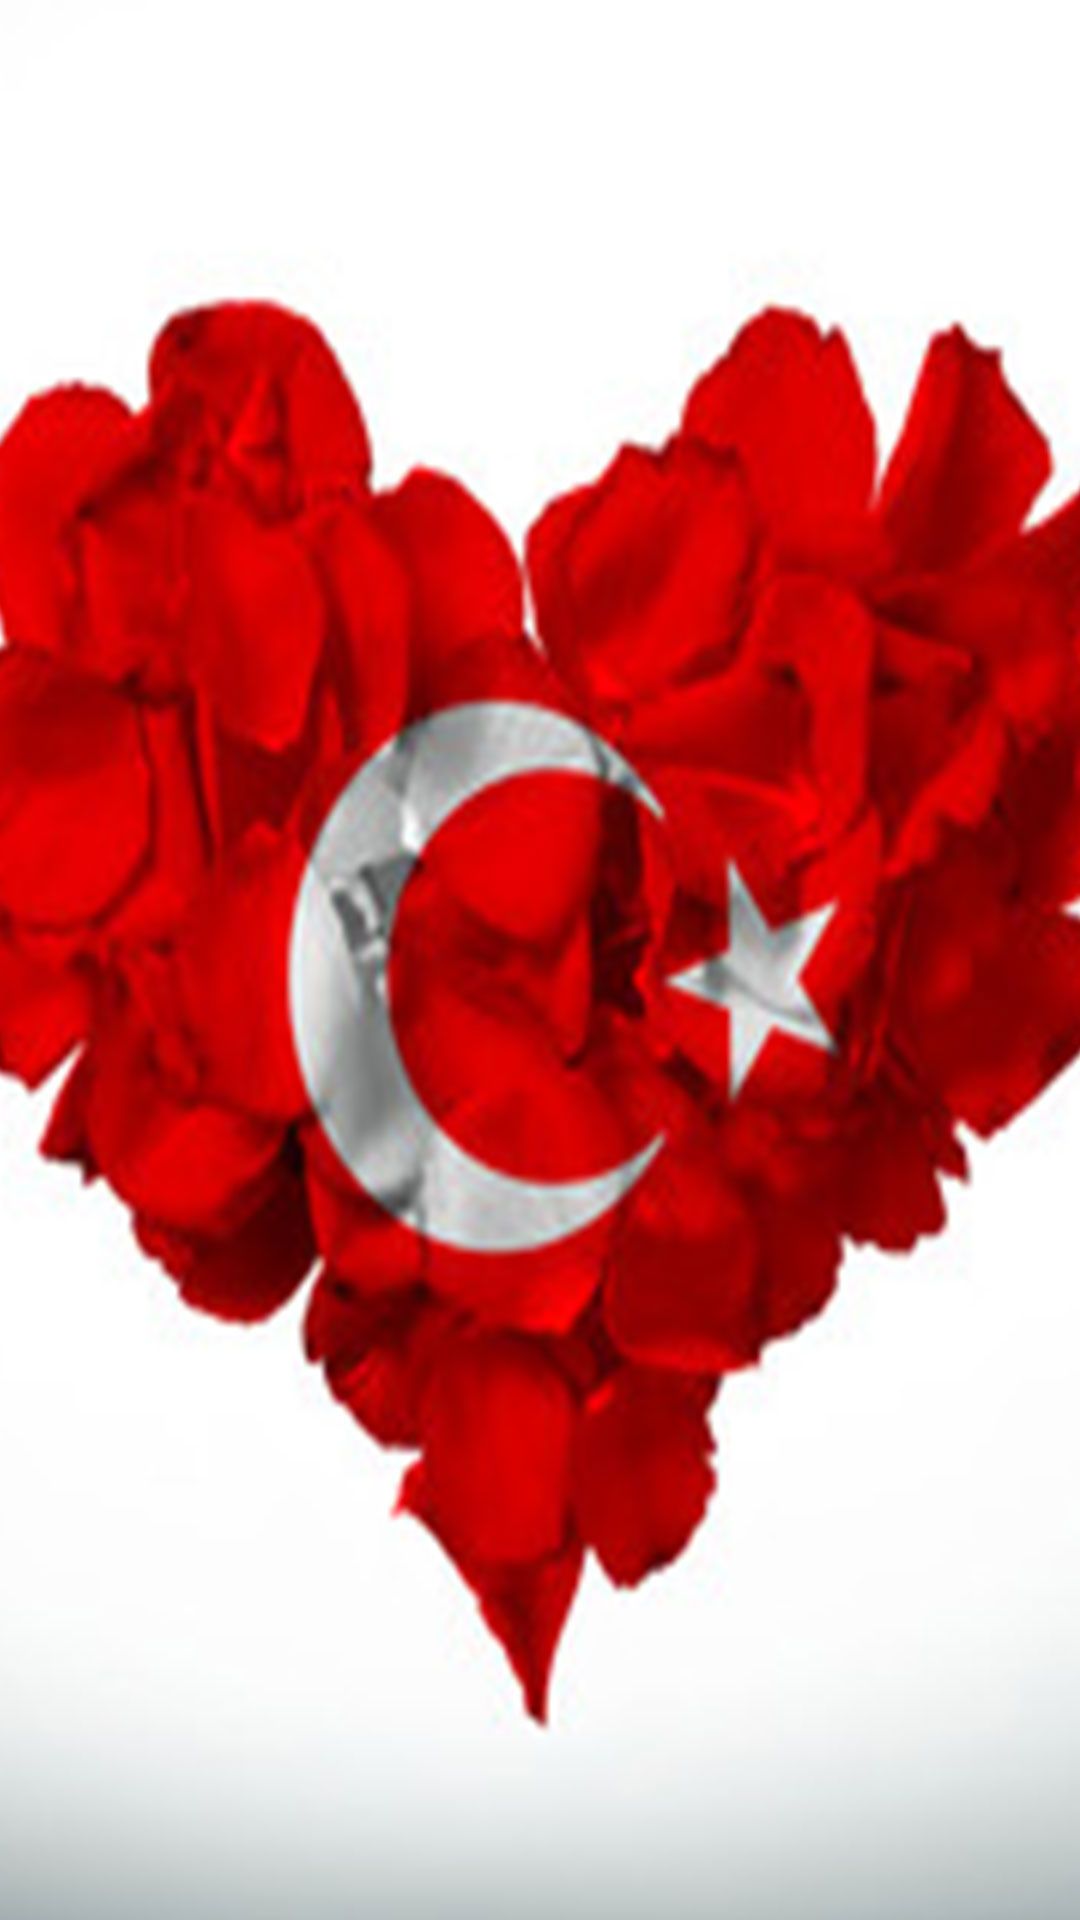 Kalpli turk bayragi 6